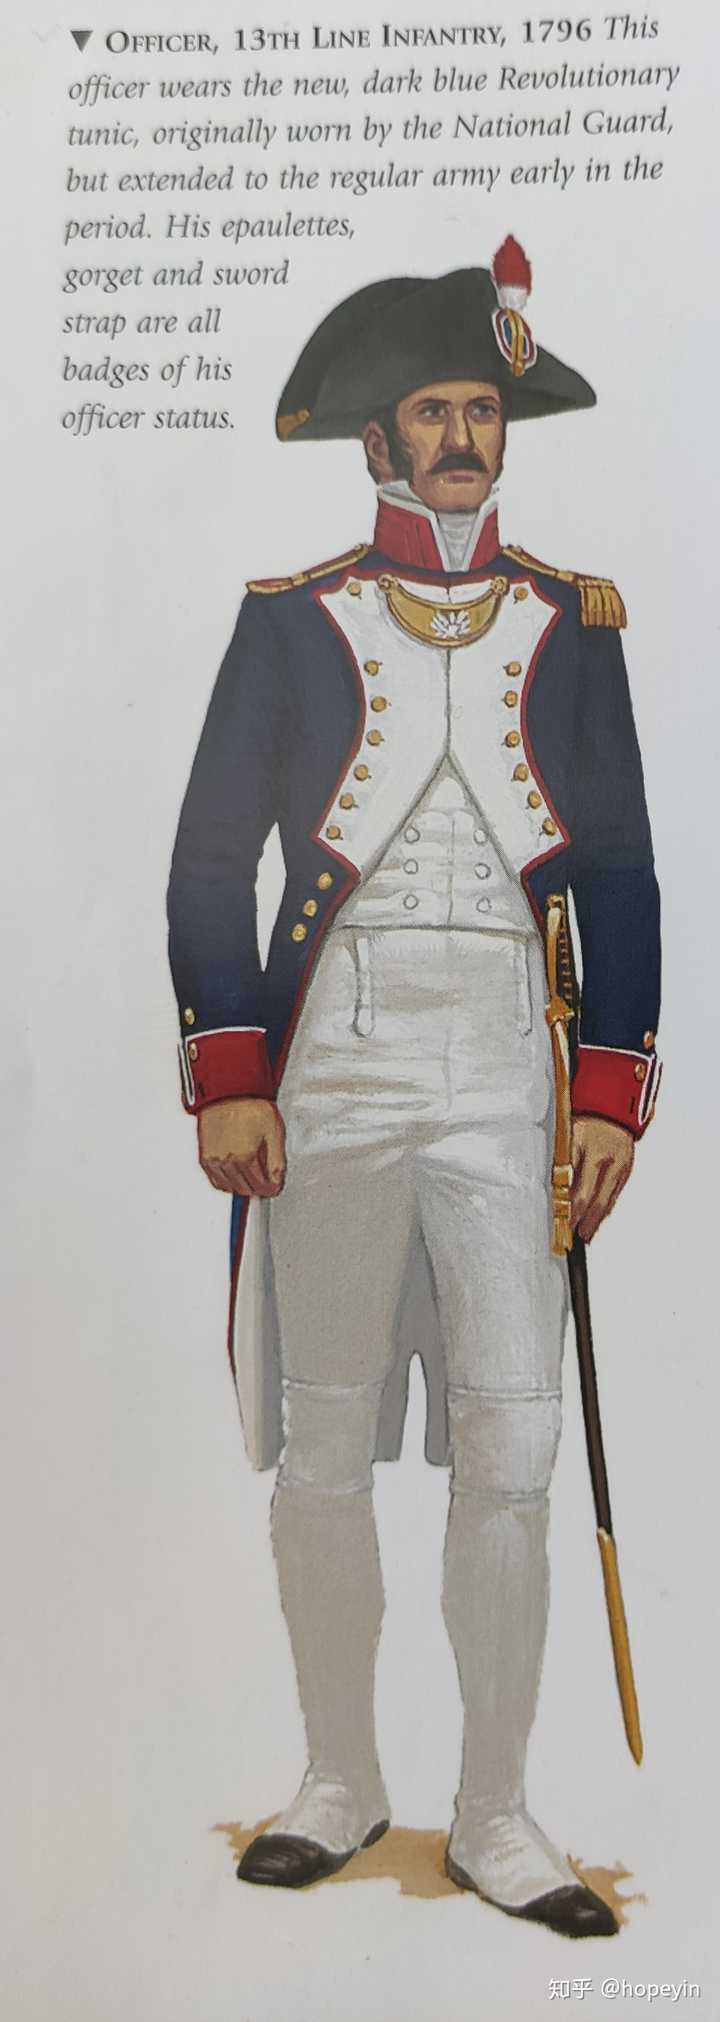 一部分图取自@休谟爱卢梭翻译的《拿破仑时代的军服》,埃尔丁著